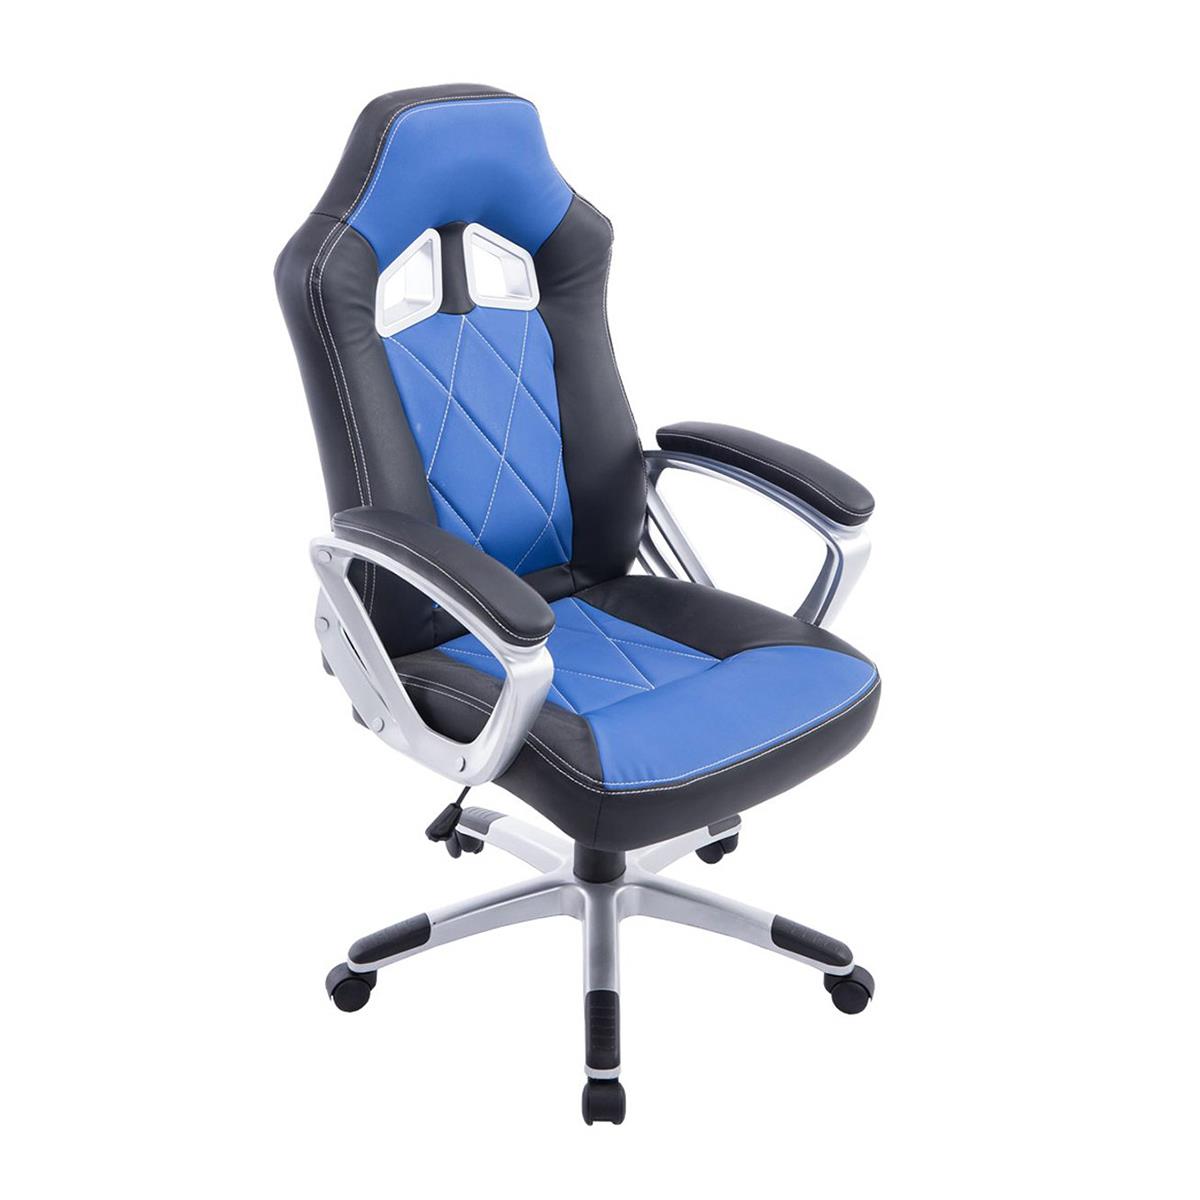 Gaming-Stuhl SAINZ, sportliches Design, dicke Polsterung, Lederbezug, Farbe Schwarz / Blau